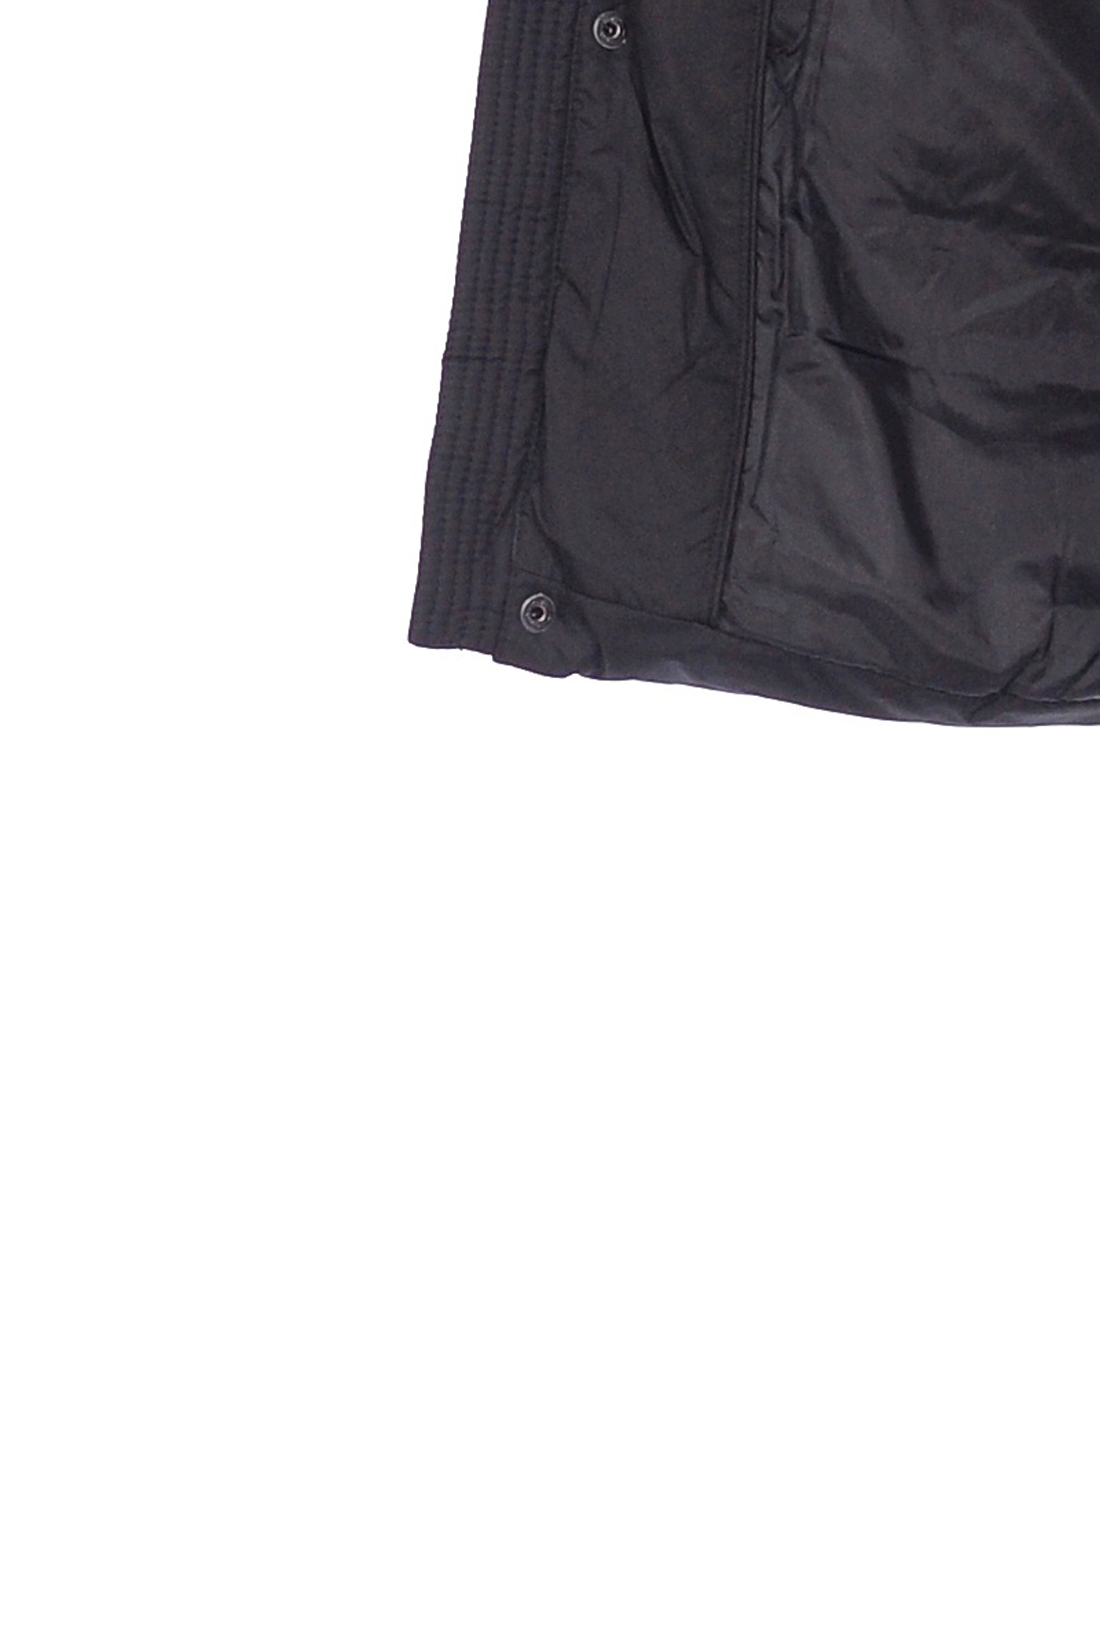 Пуховик из комбинированных материалов (арт. baon B508512), размер S, цвет черный Пуховик из комбинированных материалов (арт. baon B508512) - фото 4